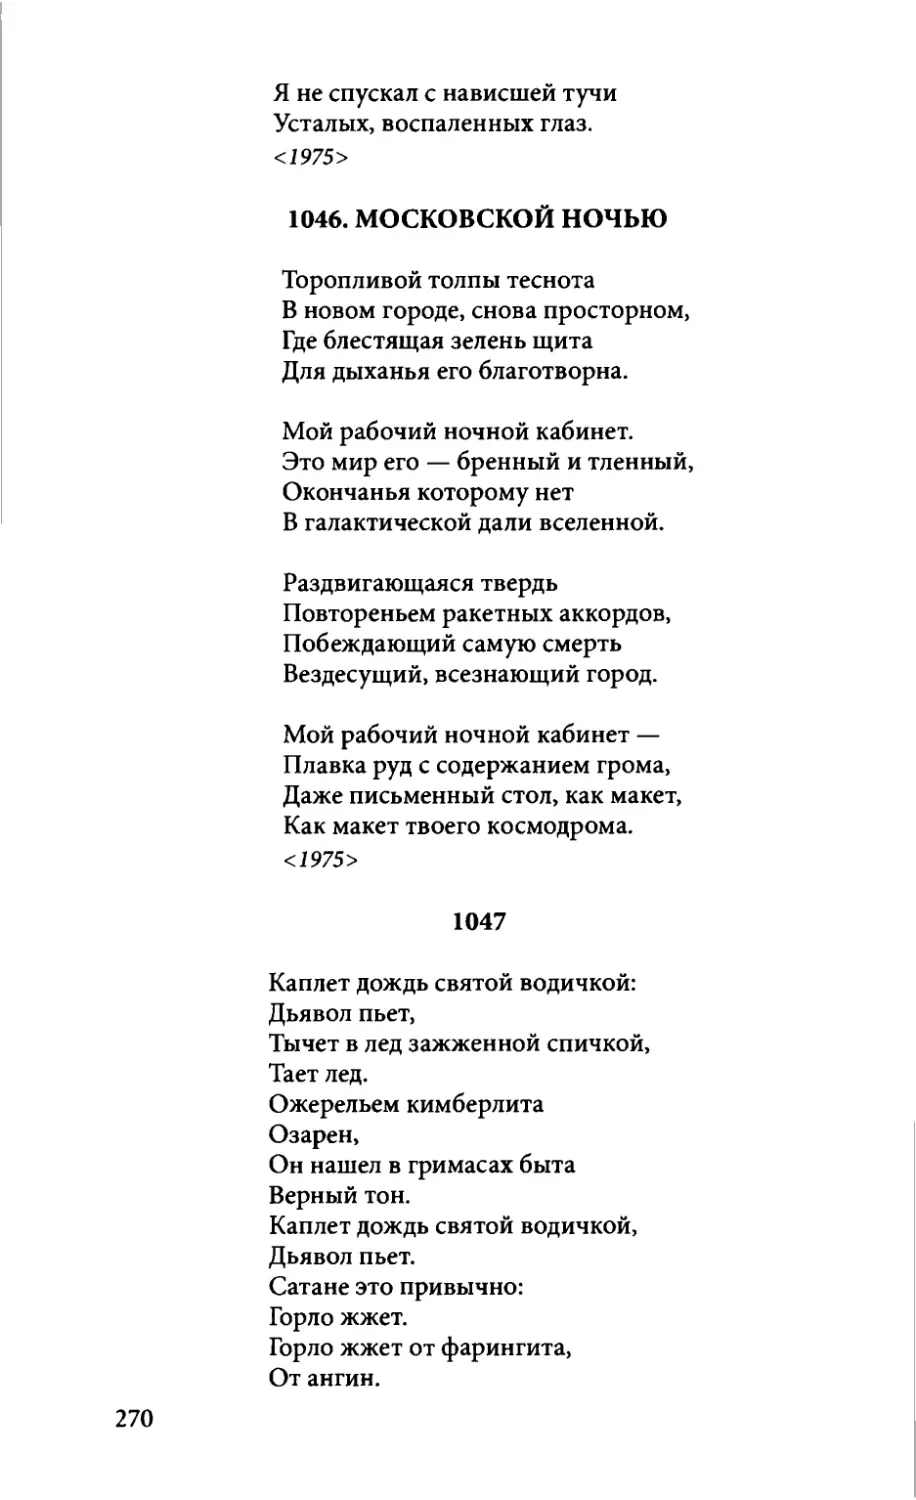 1046. Московской ночью
1047. «Каплет дождь святой водичкой...»